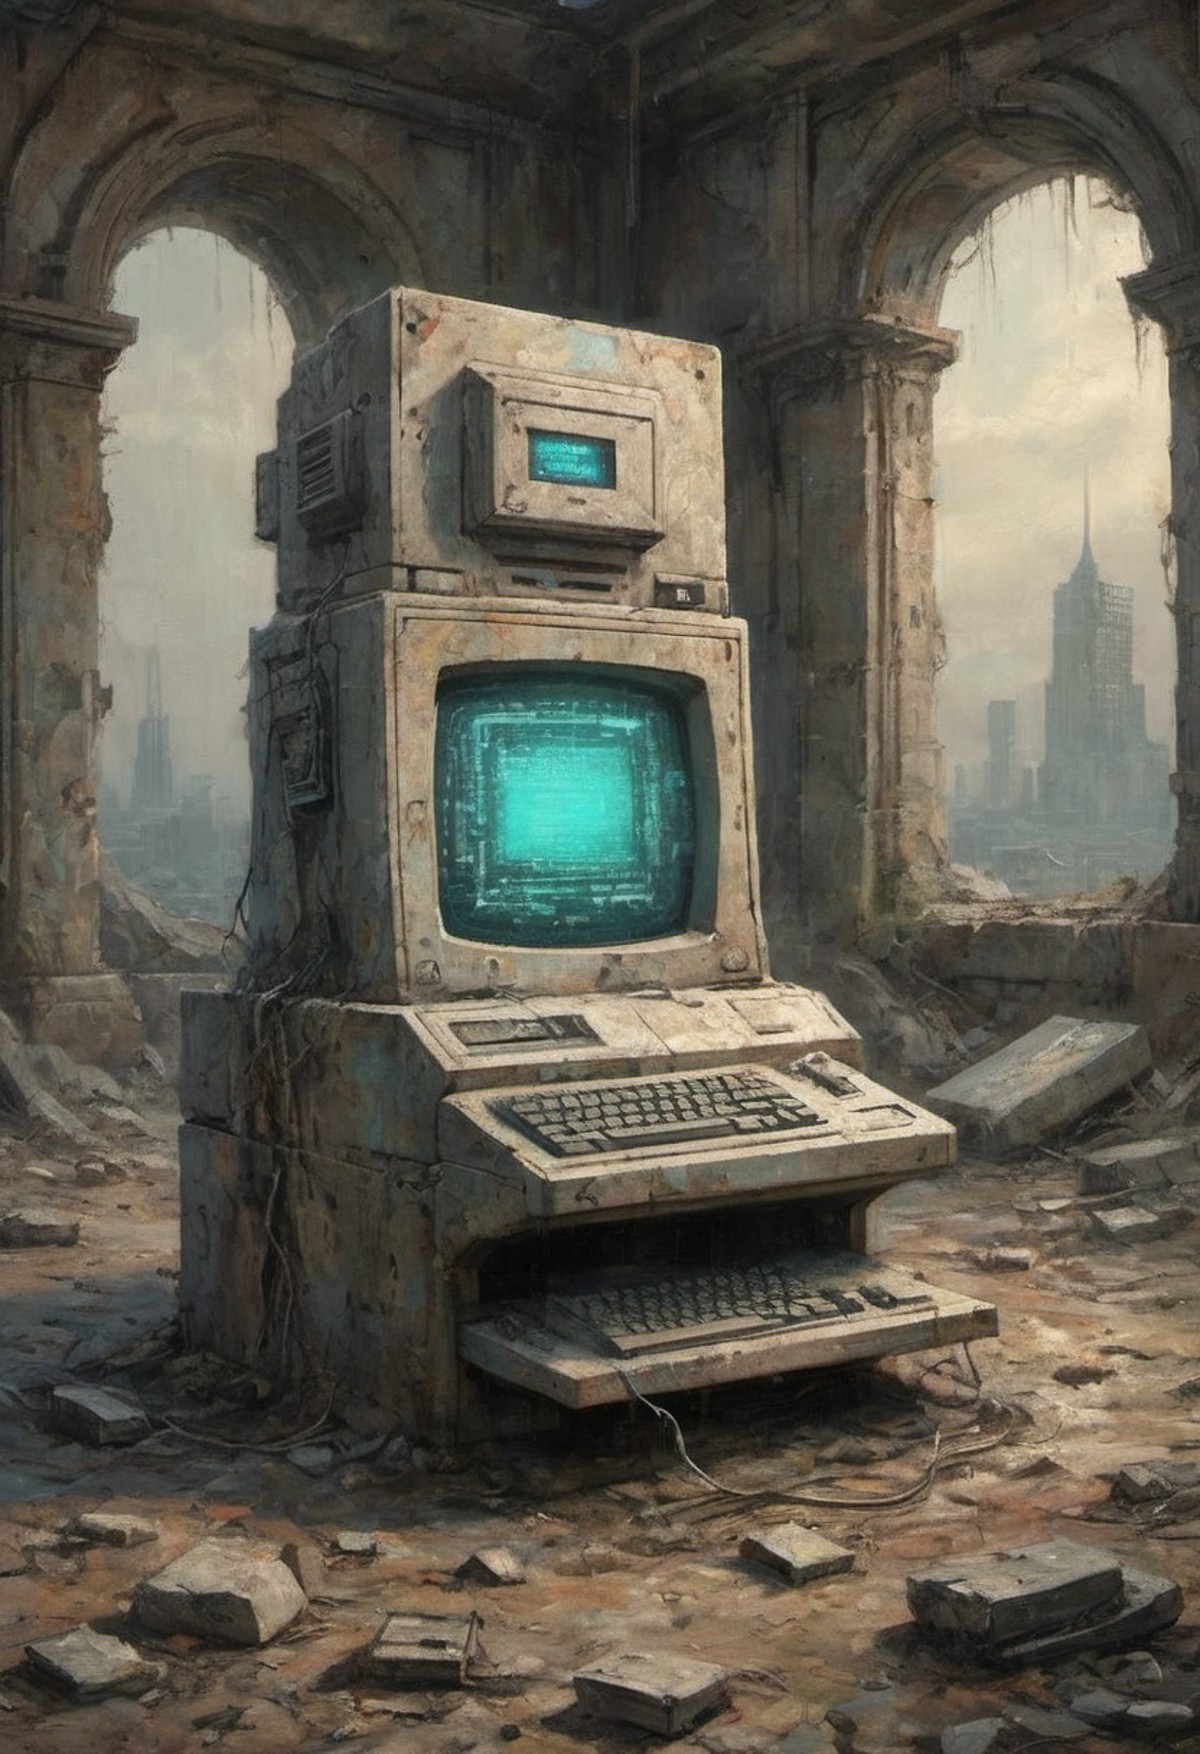 dystopian retro-futuristic computer in ruins